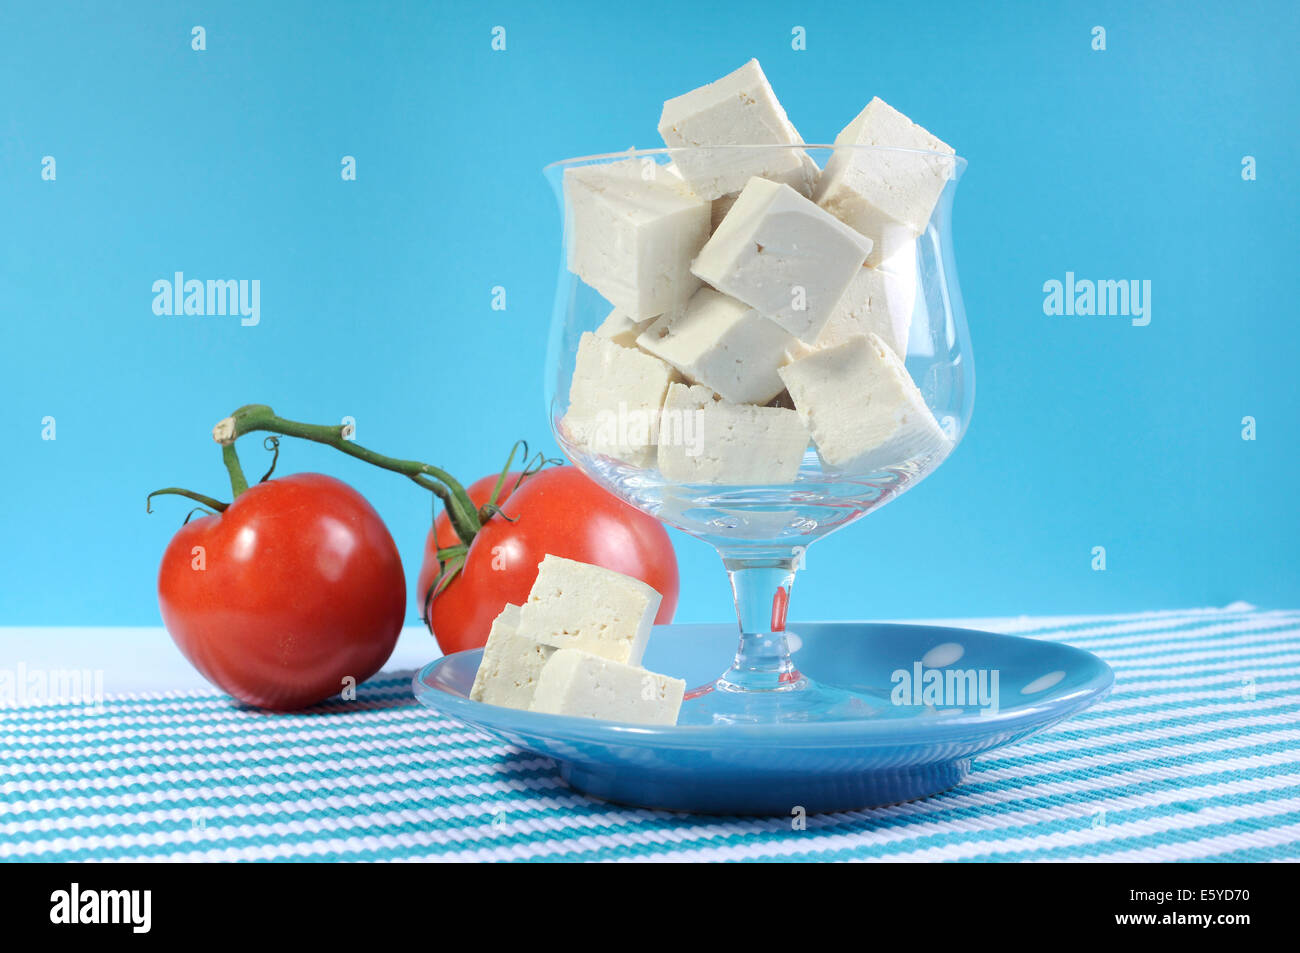 Gesunde Ernährung gesunde Ernährung Lebensmittelgruppe, freie Milchprodukte mit Soja Tofu in elegante Glasschale auf blauem Hintergrund. Stockfoto